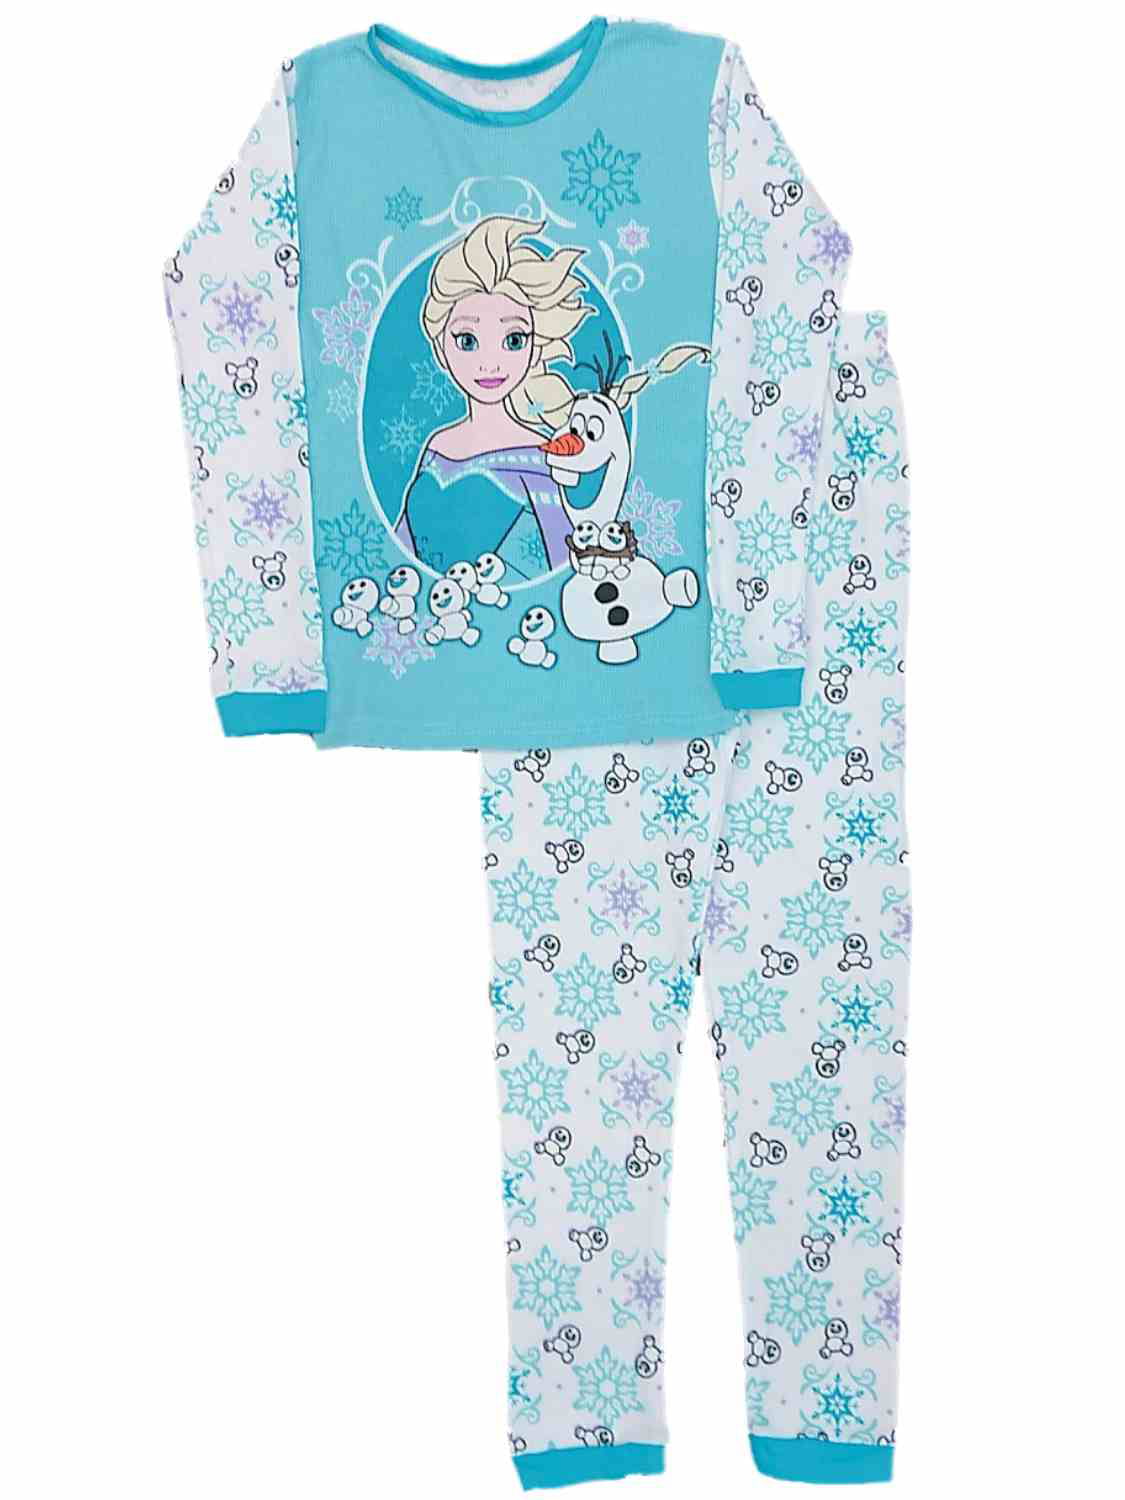 Disney Frozen Girls Thermal Underwear Pajama Set Size 10 Ana/Olaf New 